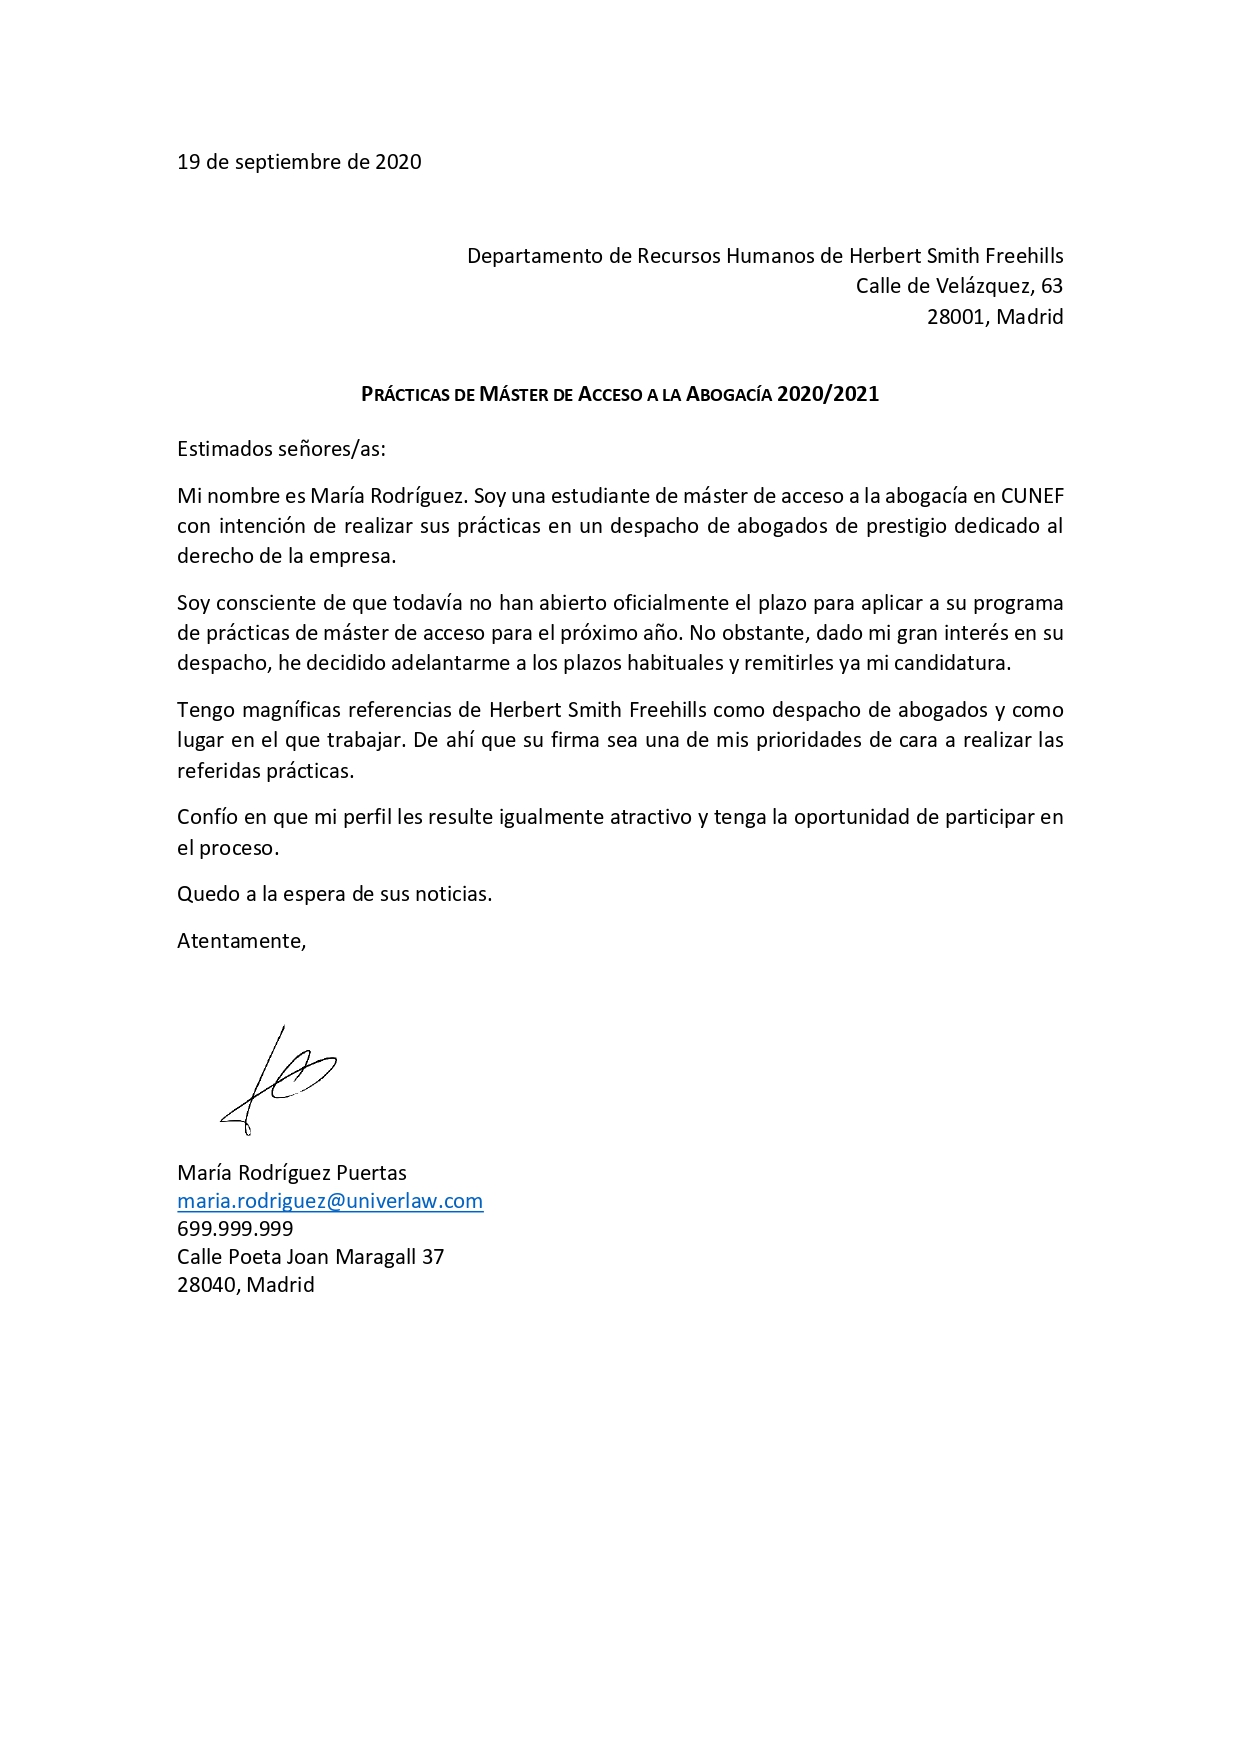 Carta de presentación - Univerlaw España